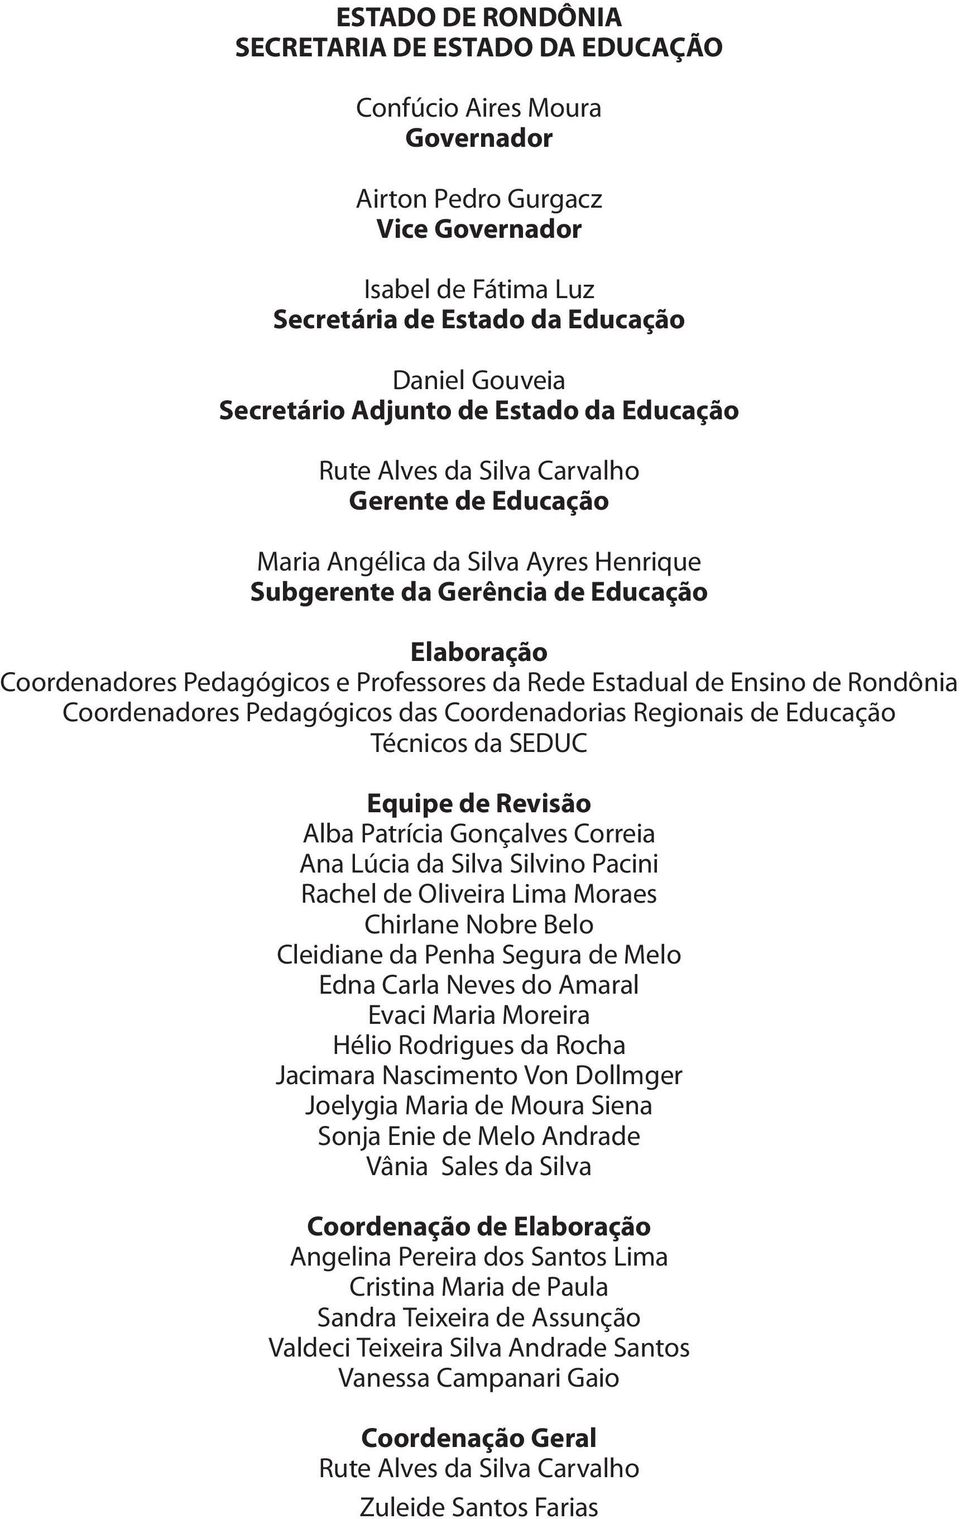 Pedagógicos e Professores da Rede Estadual de Ensino de Rondônia Coordenadores Pedagógicos das Coordenadorias Regionais de Educação Técnicos da SEDUC Equipe de Revisão Alba Patrícia Gonçalves Correia